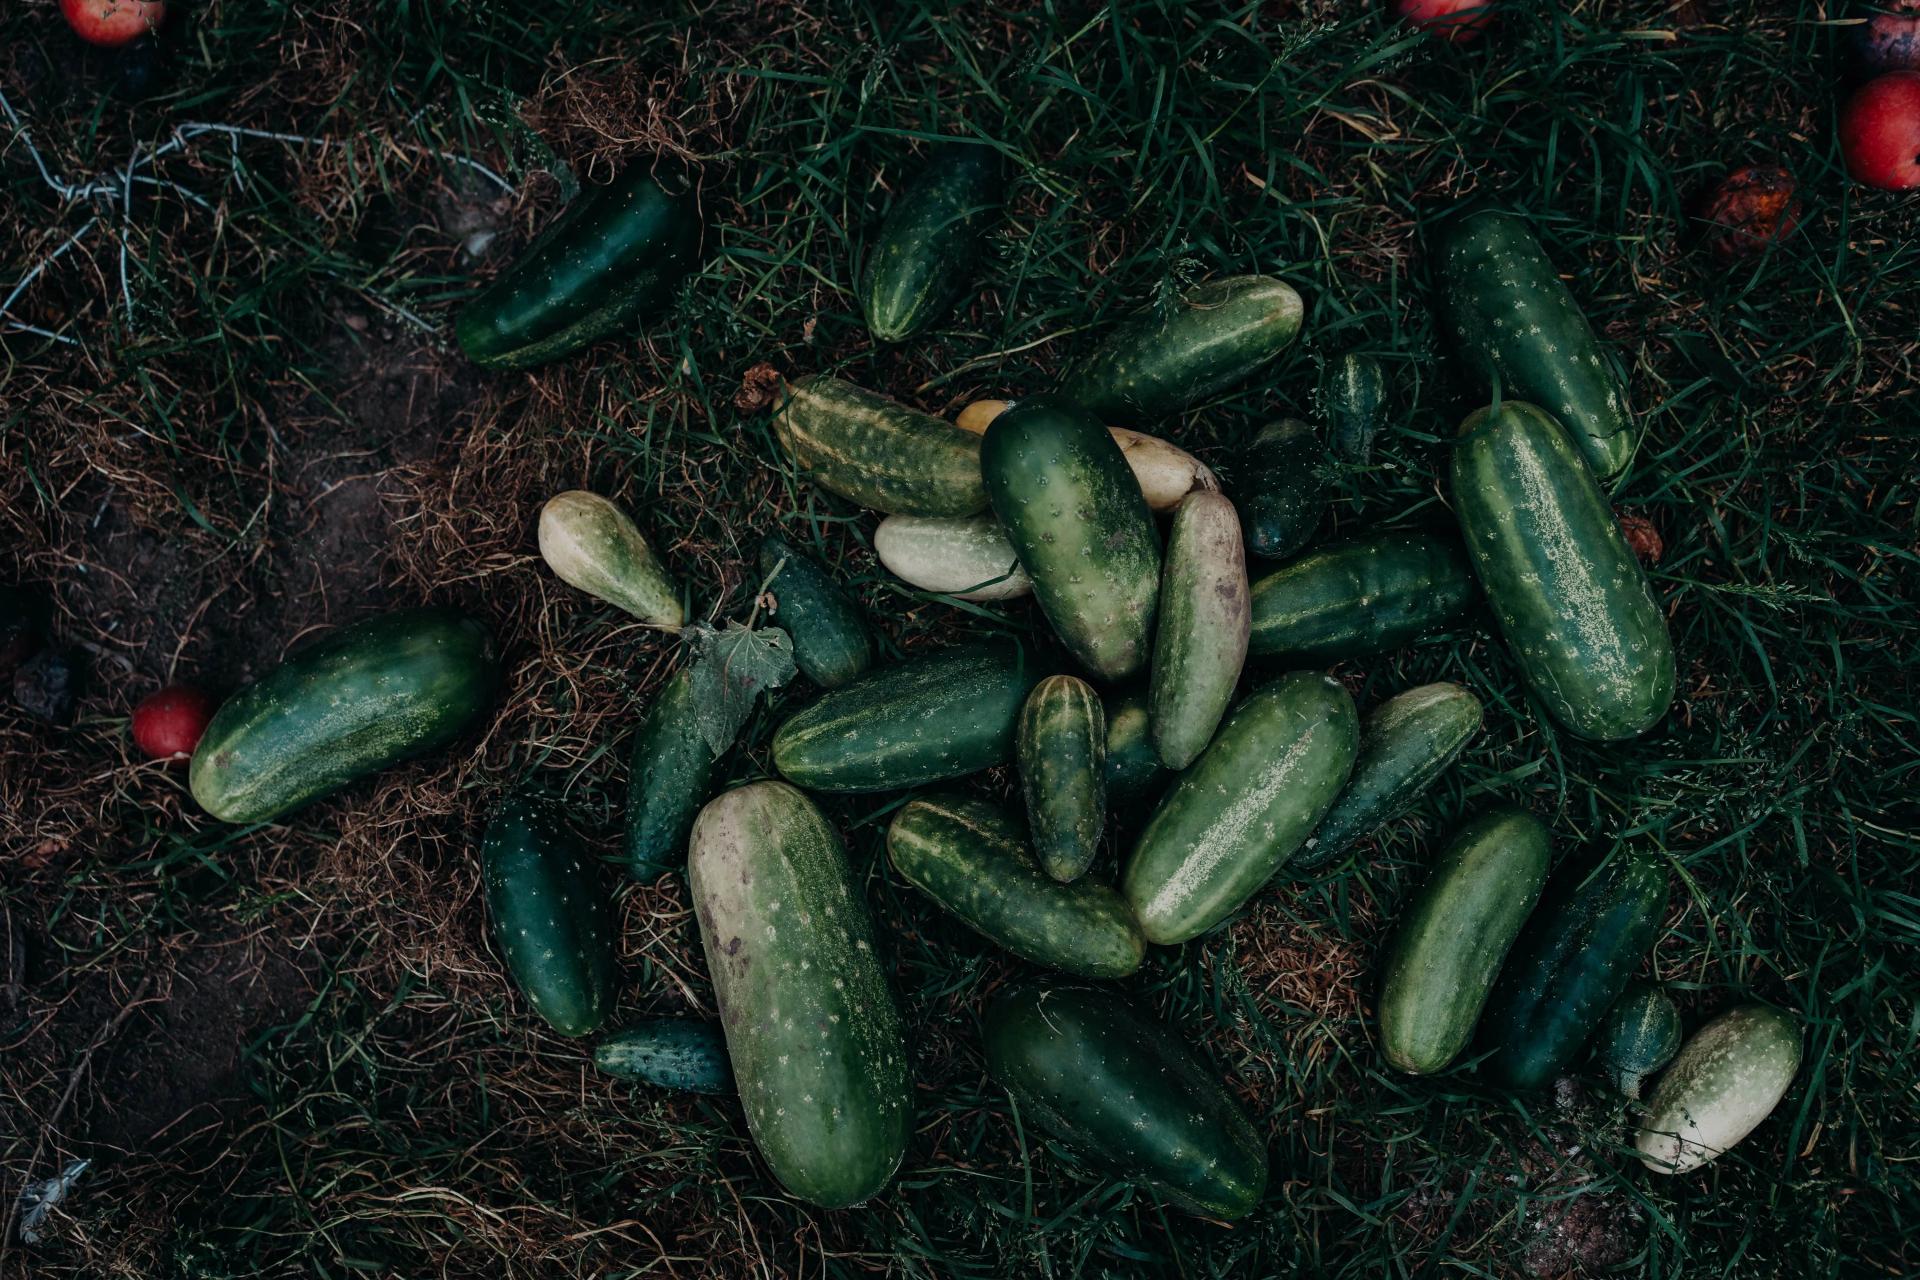 Cucumber Harvesting